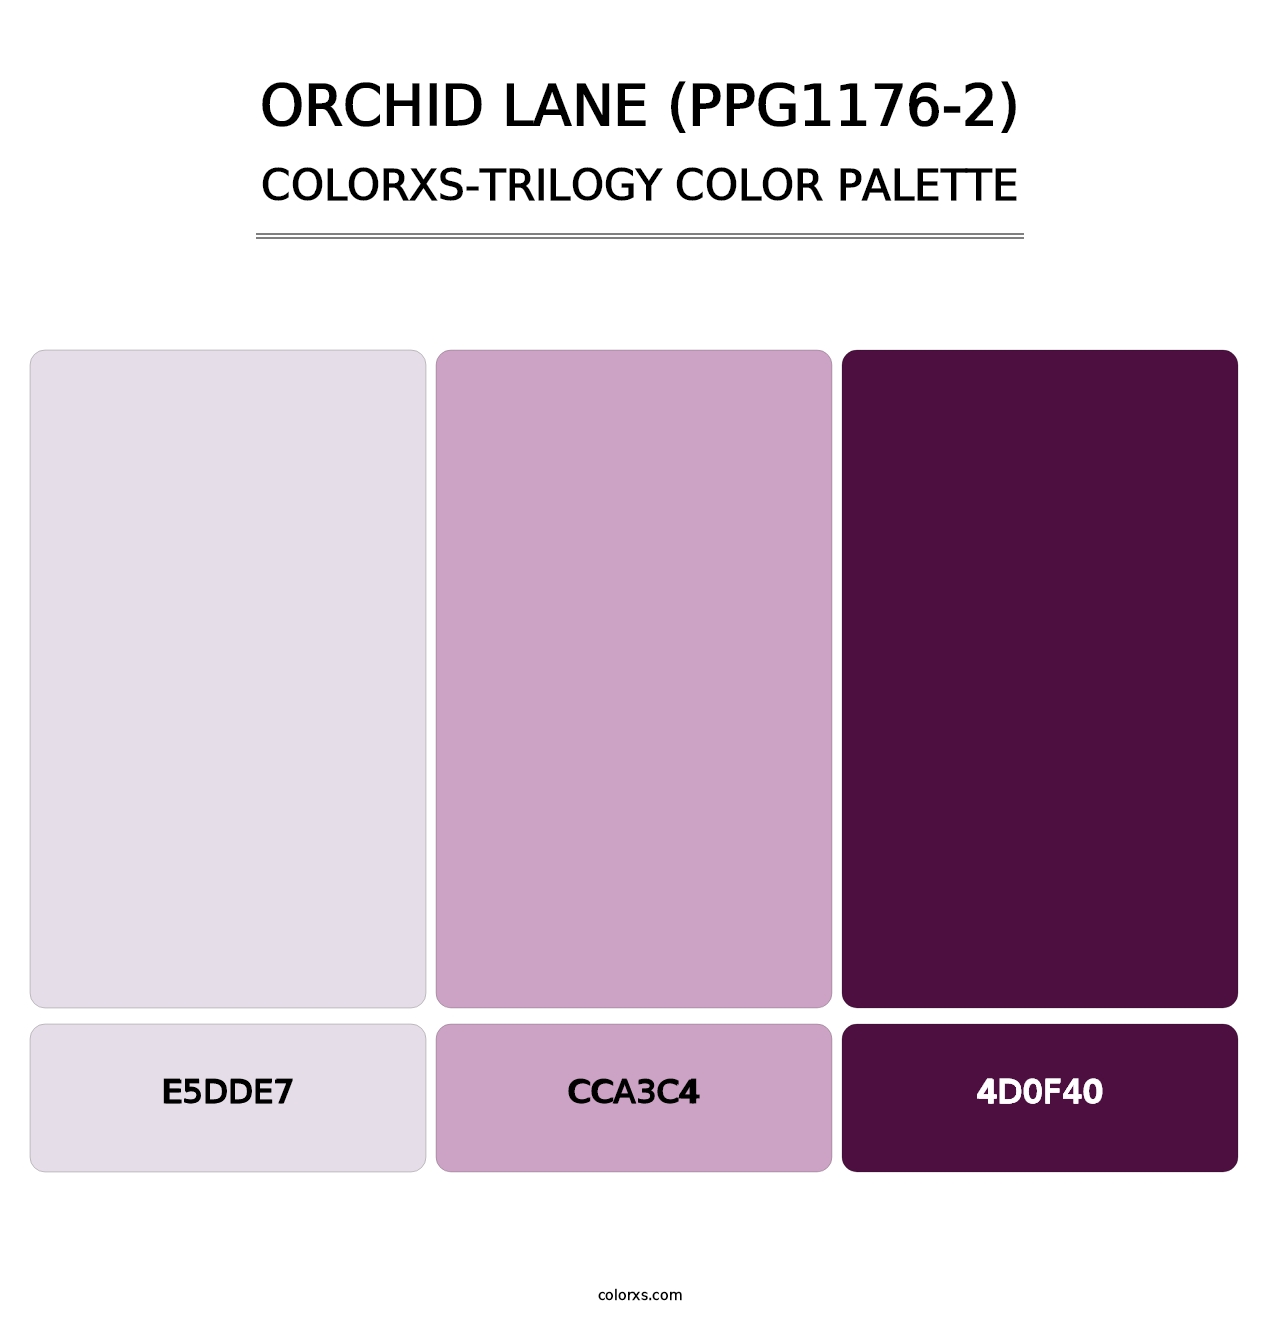 Orchid Lane (PPG1176-2) - Colorxs Trilogy Palette